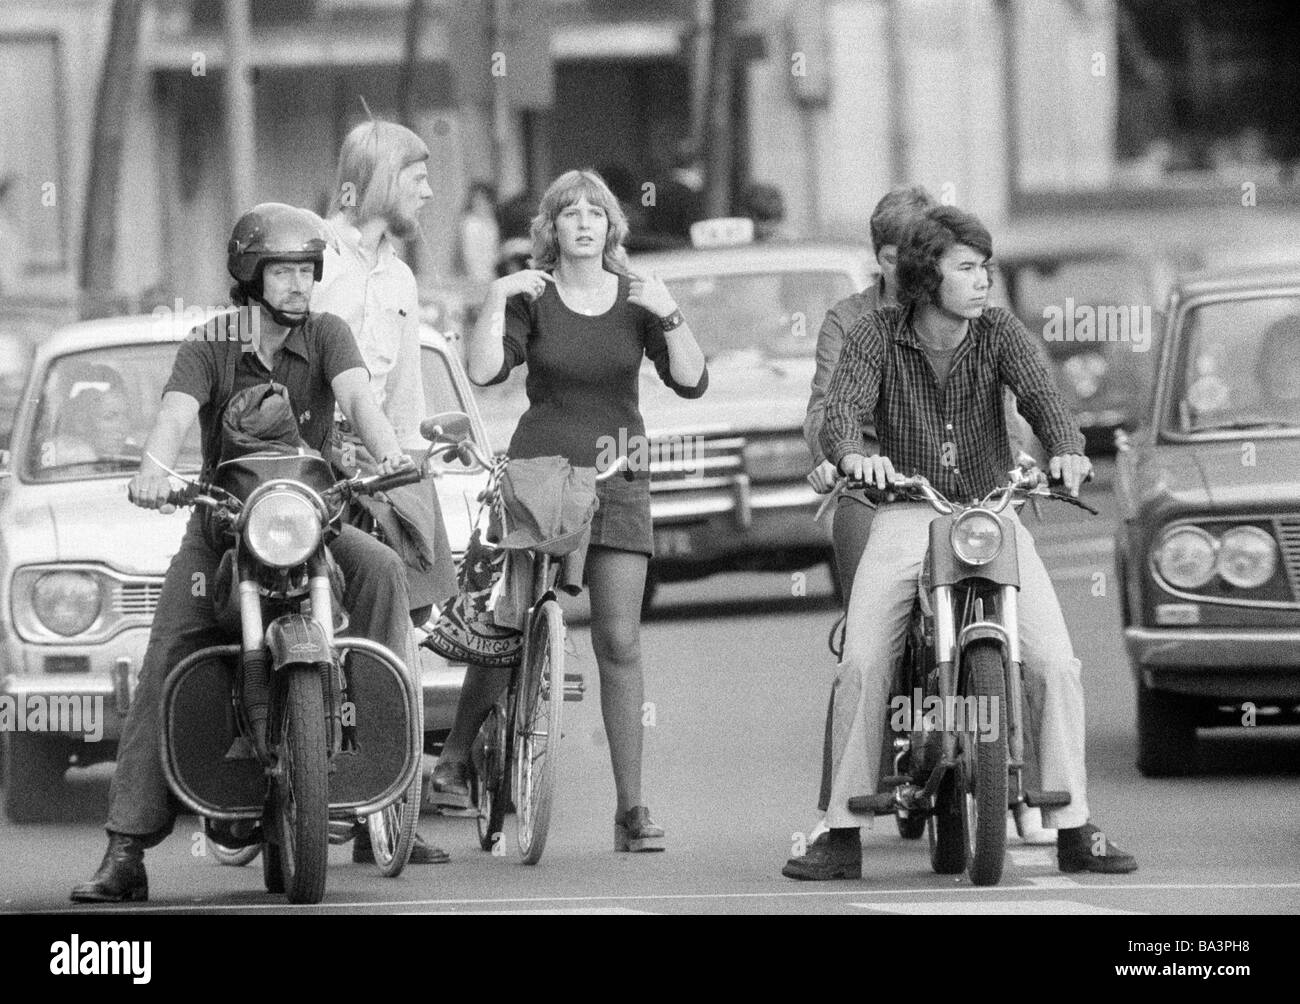 Années 70, photo en noir et blanc, le trafic routier, le trafic de différents utilisateurs en attente aux feux rouges, moto, scooter, vélo, voitures de tourisme, les jeunes hommes, jeune femme, adolescents, âgés de 18 à 35 ans, Pays-Bas, Amsterdam Banque D'Images